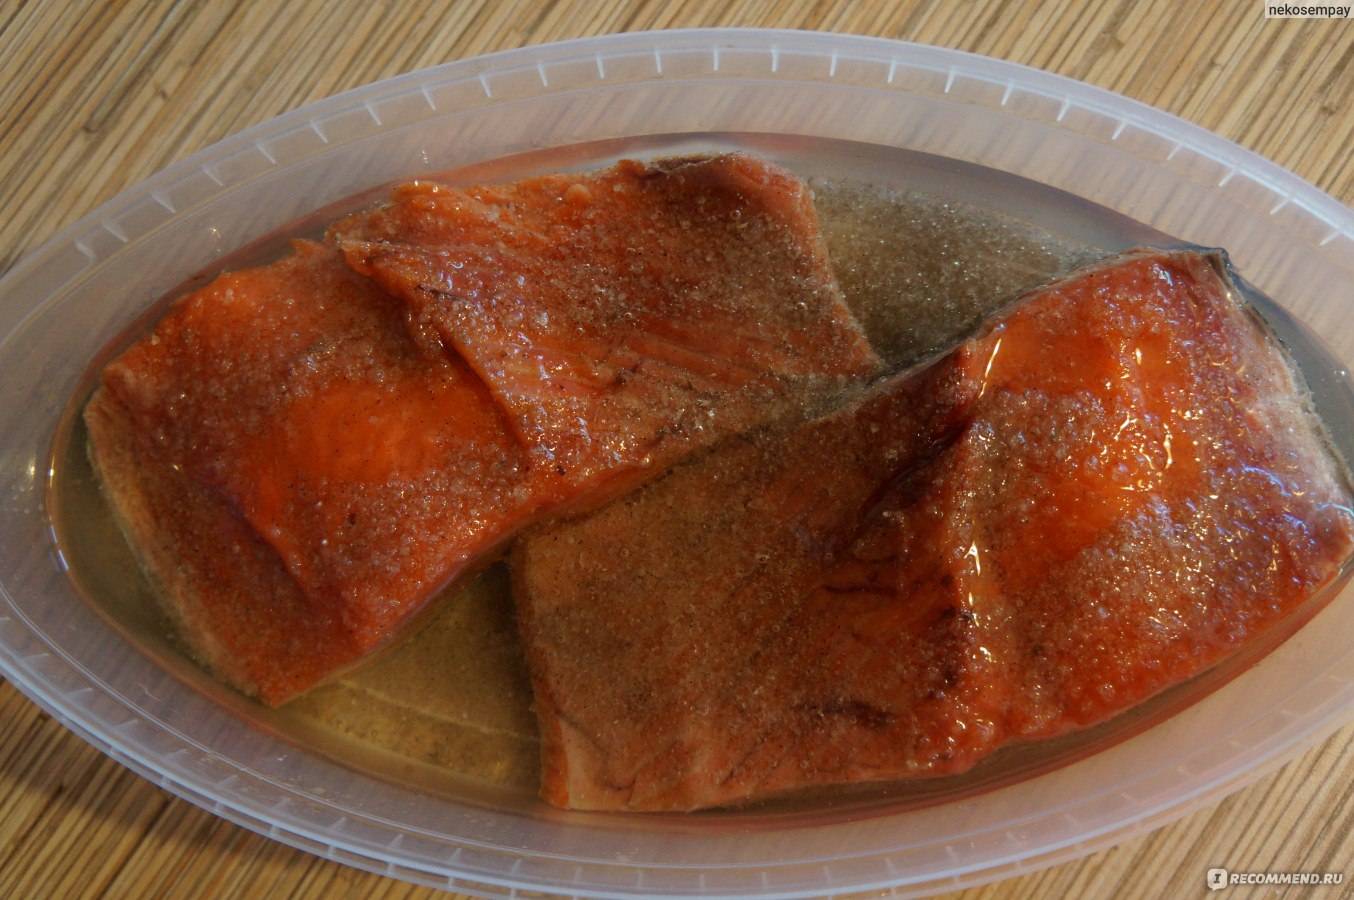 Рыба кижуч - рецепты вкусных блюд с фото. как вкусно посолить, запечь или пожарить красную рыбу кижуч